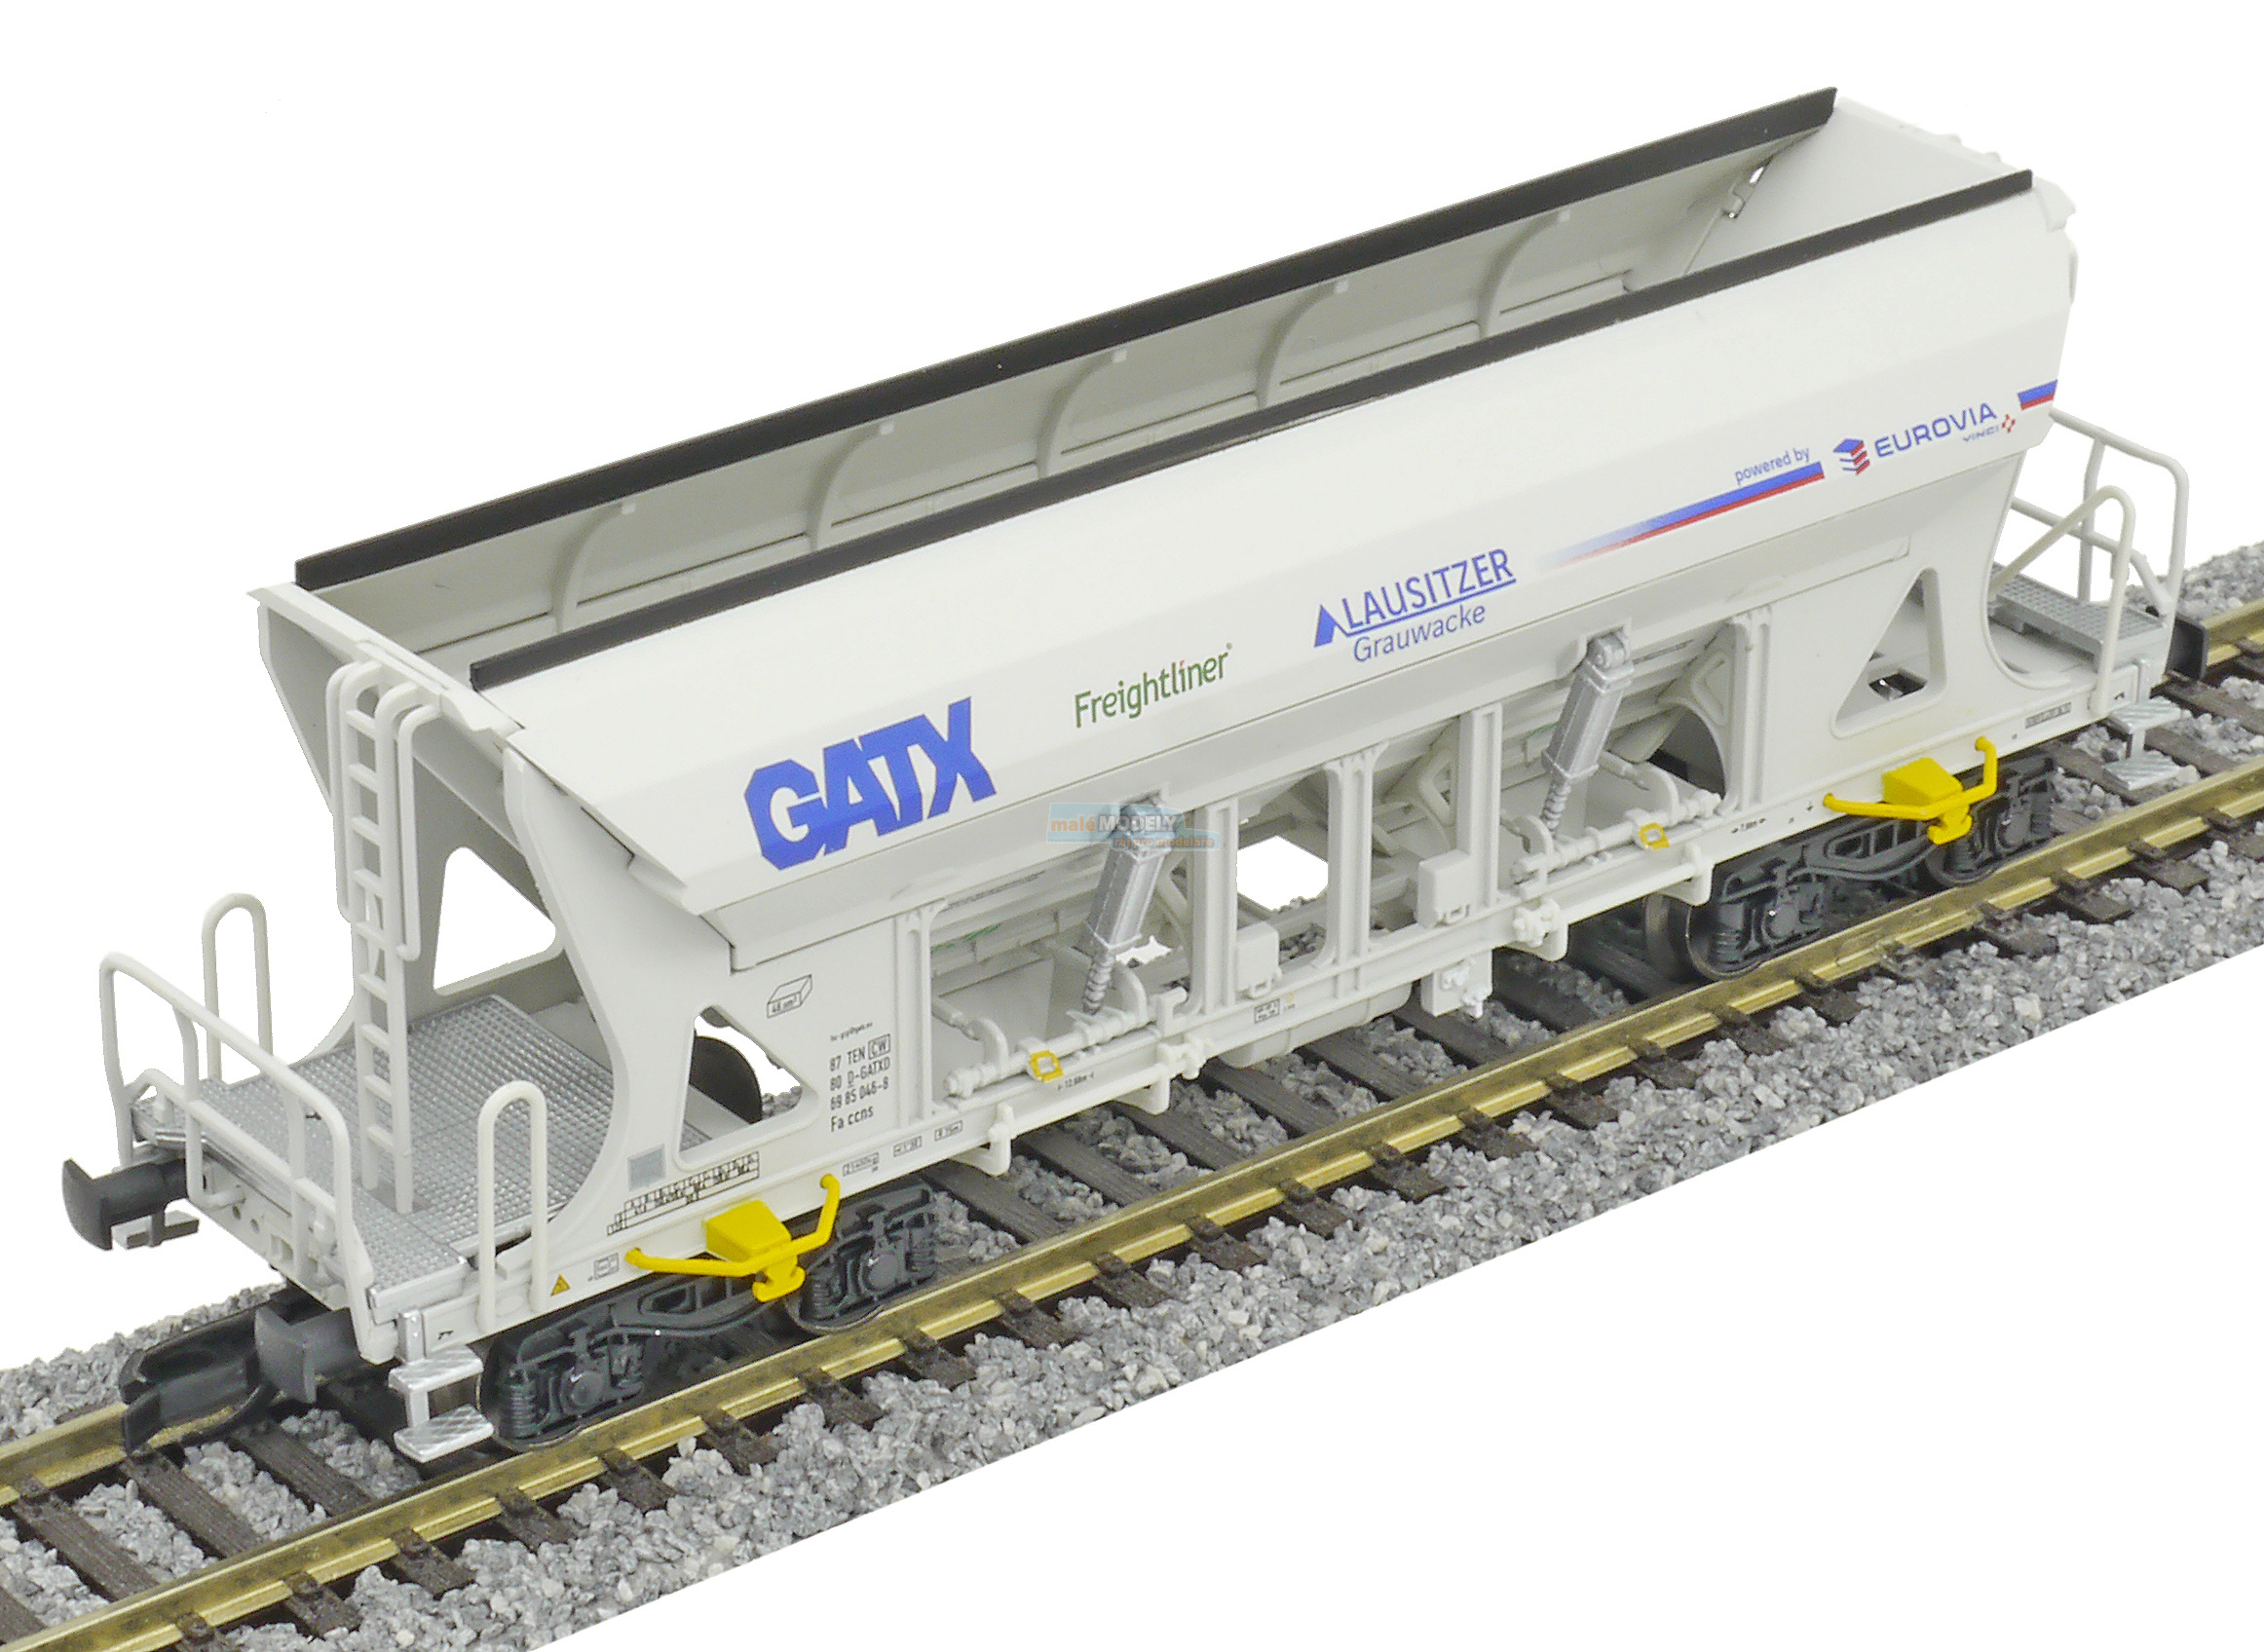 Samovýsypný vůz Faccns, GATX / Eurovia / Freightliner